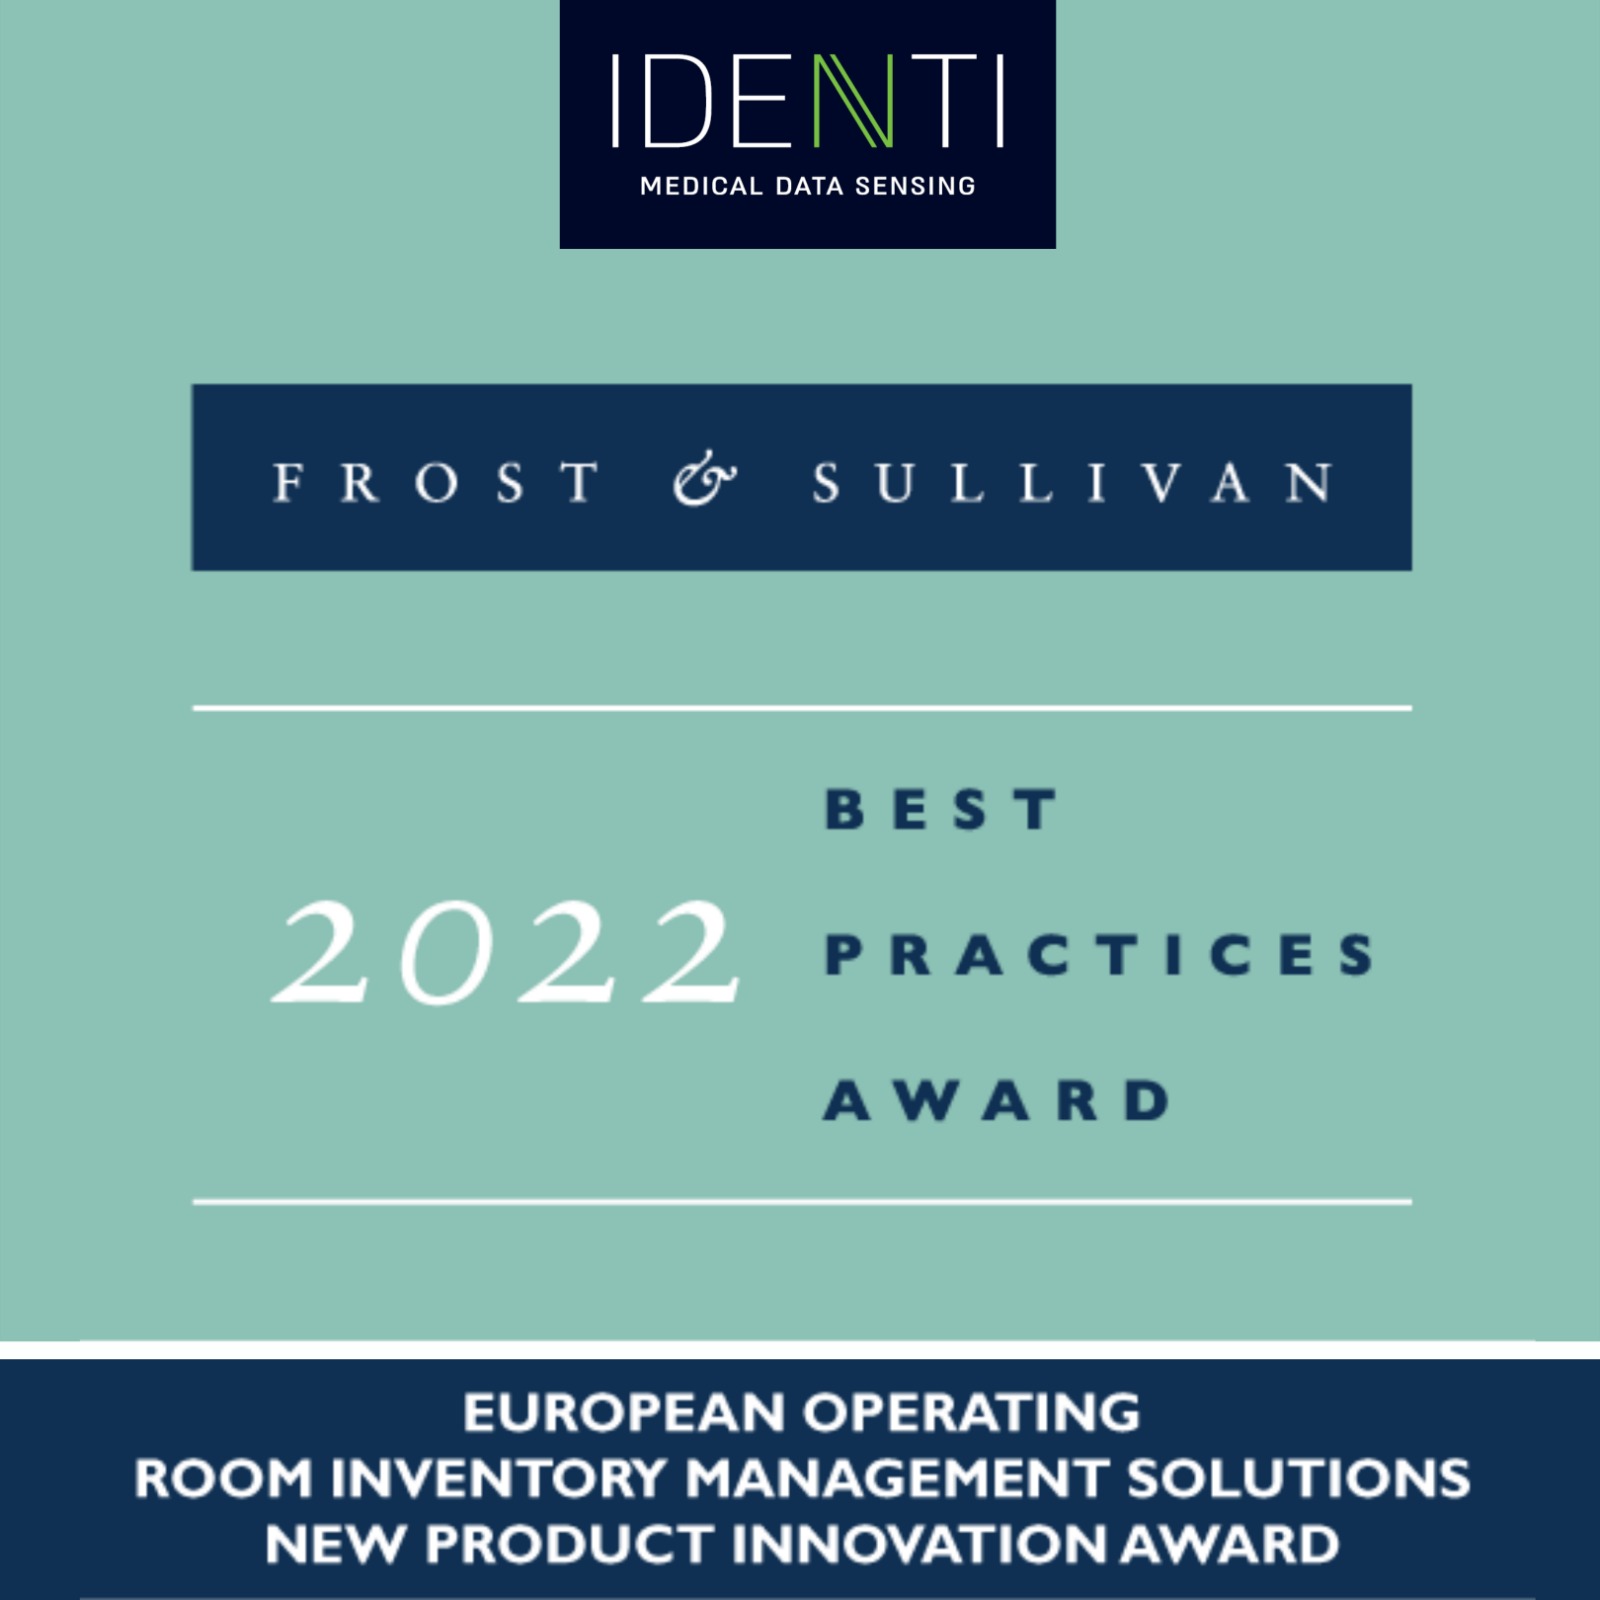 IDENTI Medical קוטפת פרס יוקרתי ונכנסת לדירוג המוביל בעולם  בתחום חדשנות בחדרי ניתוח